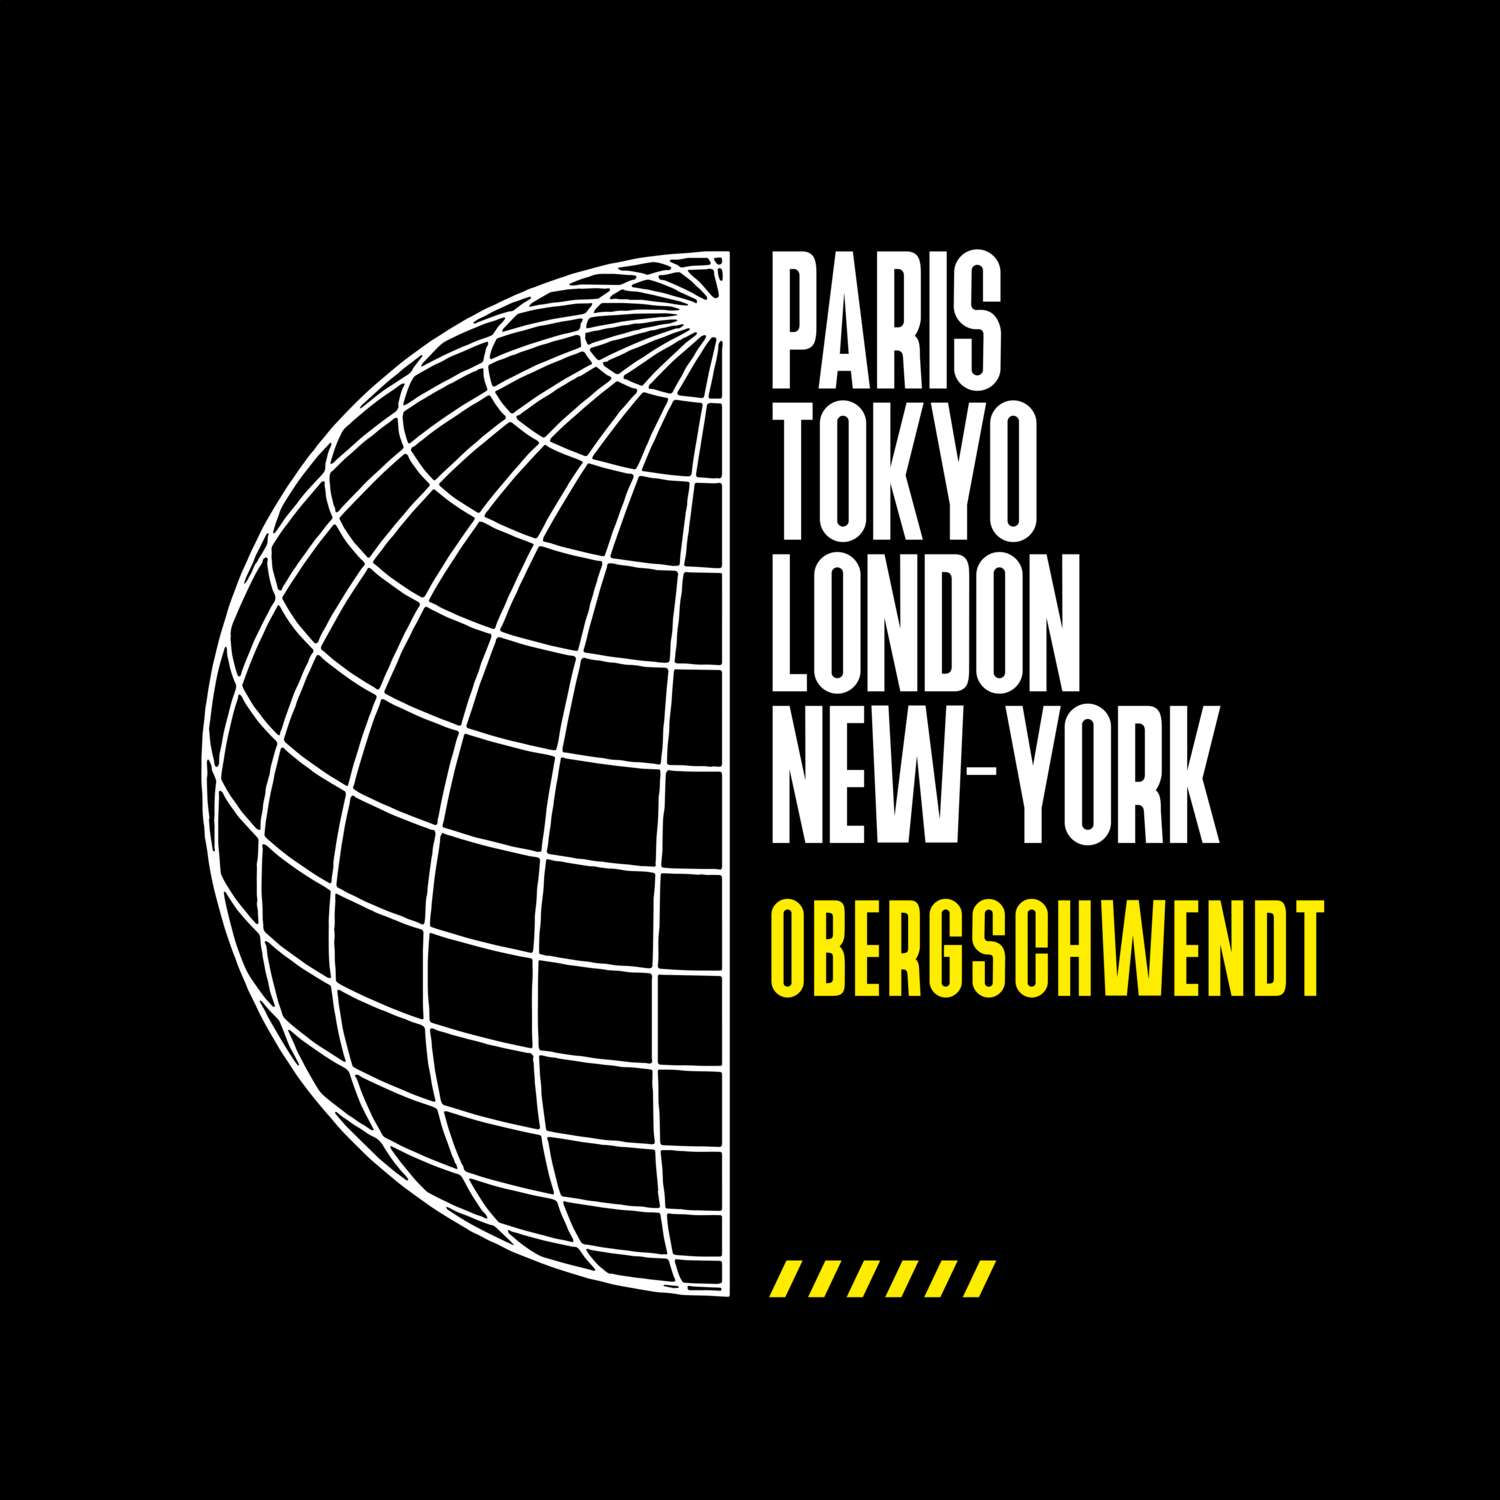 Obergschwendt T-Shirt »Paris Tokyo London«